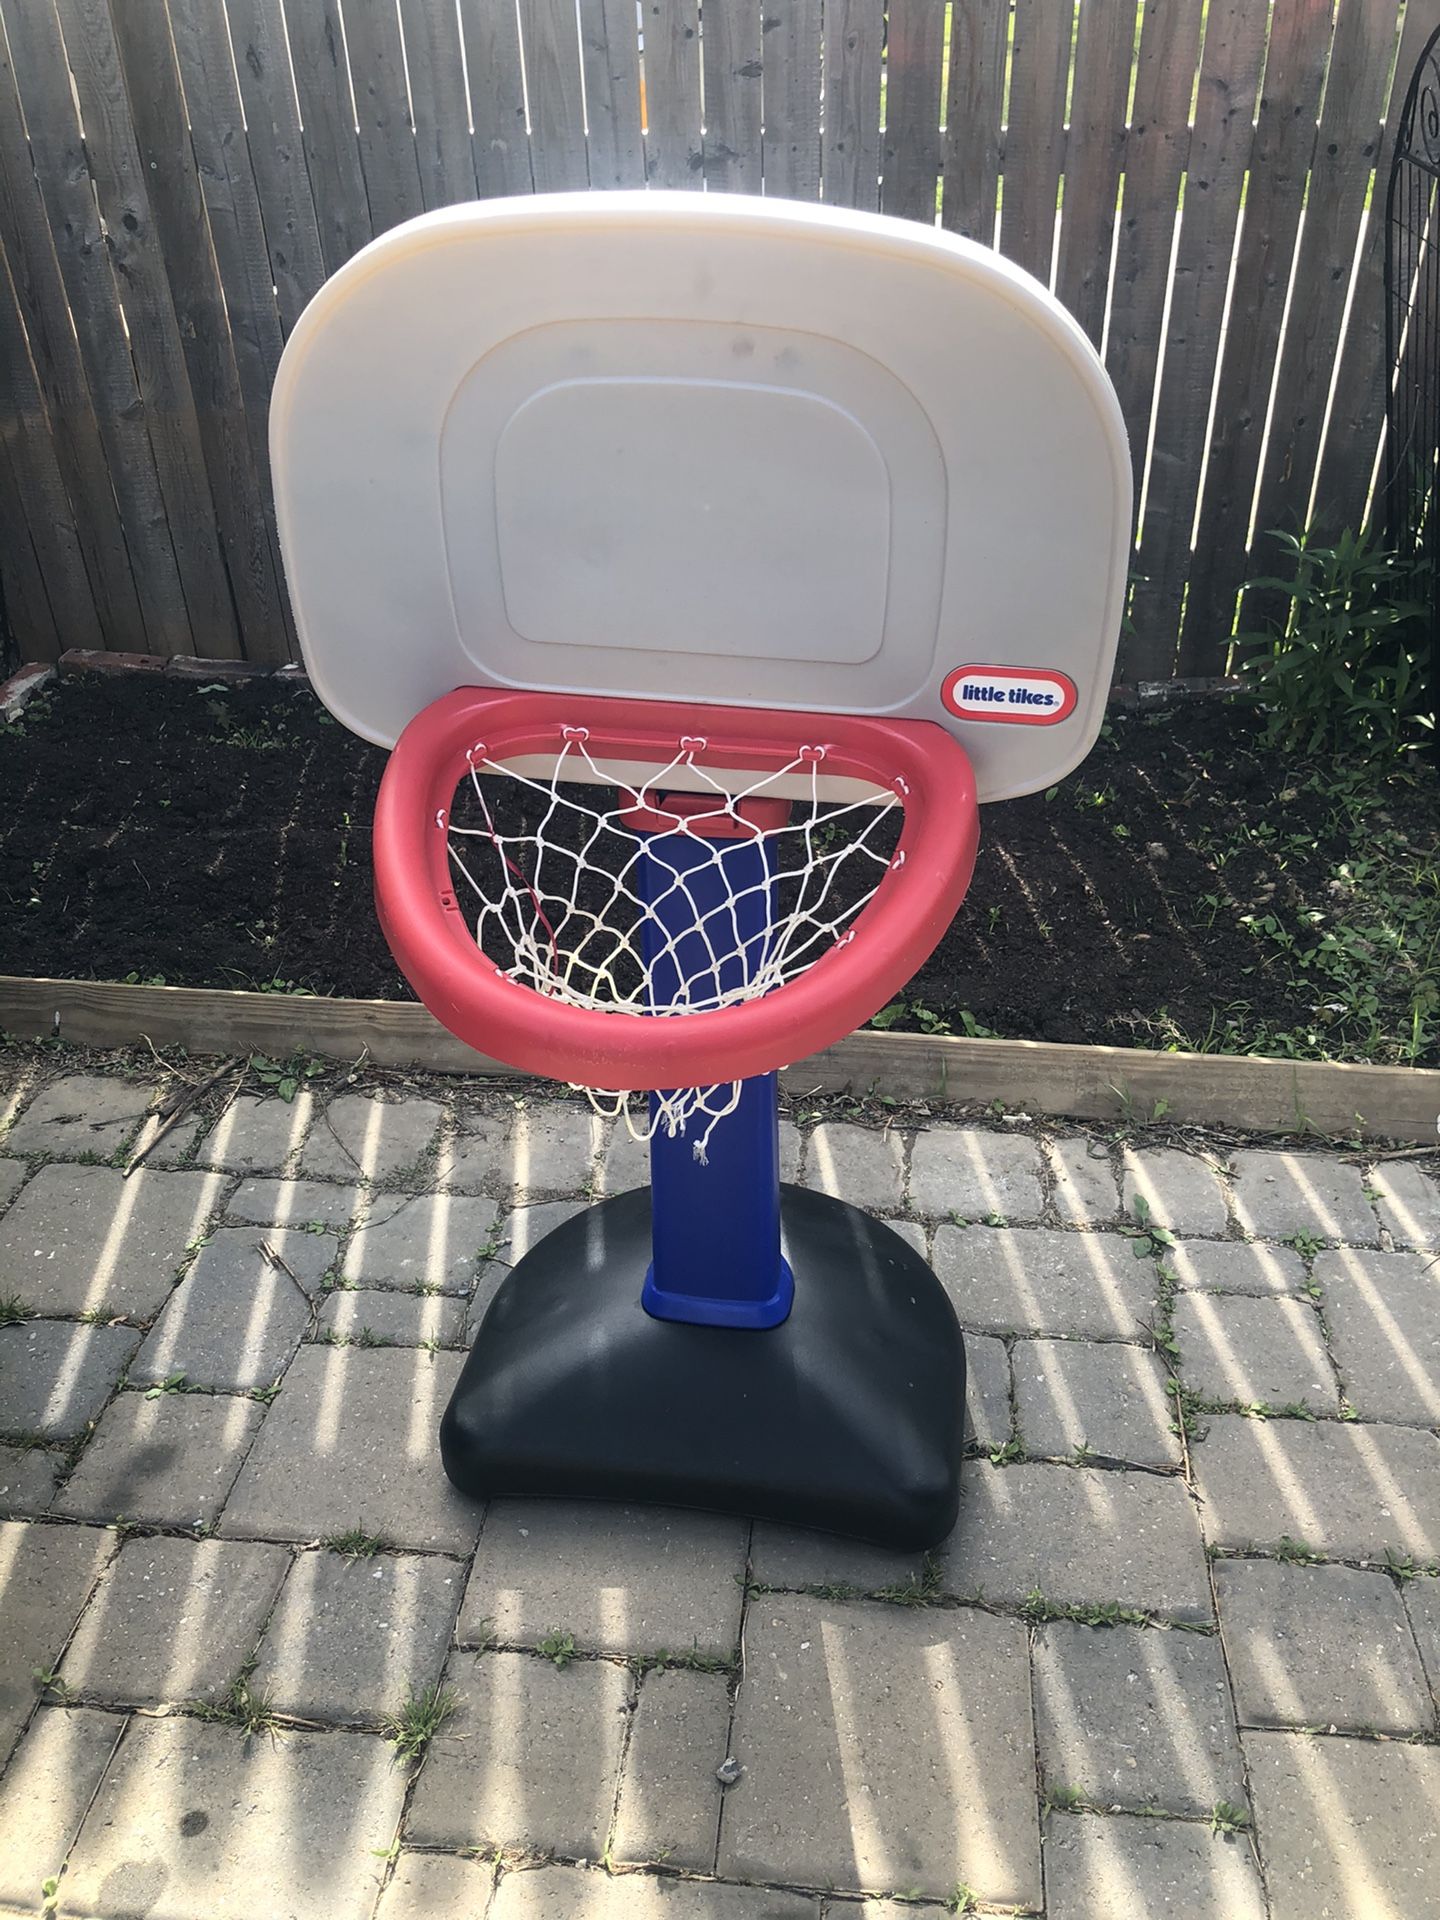 Little Tikes Adjustable Basketball Hoop